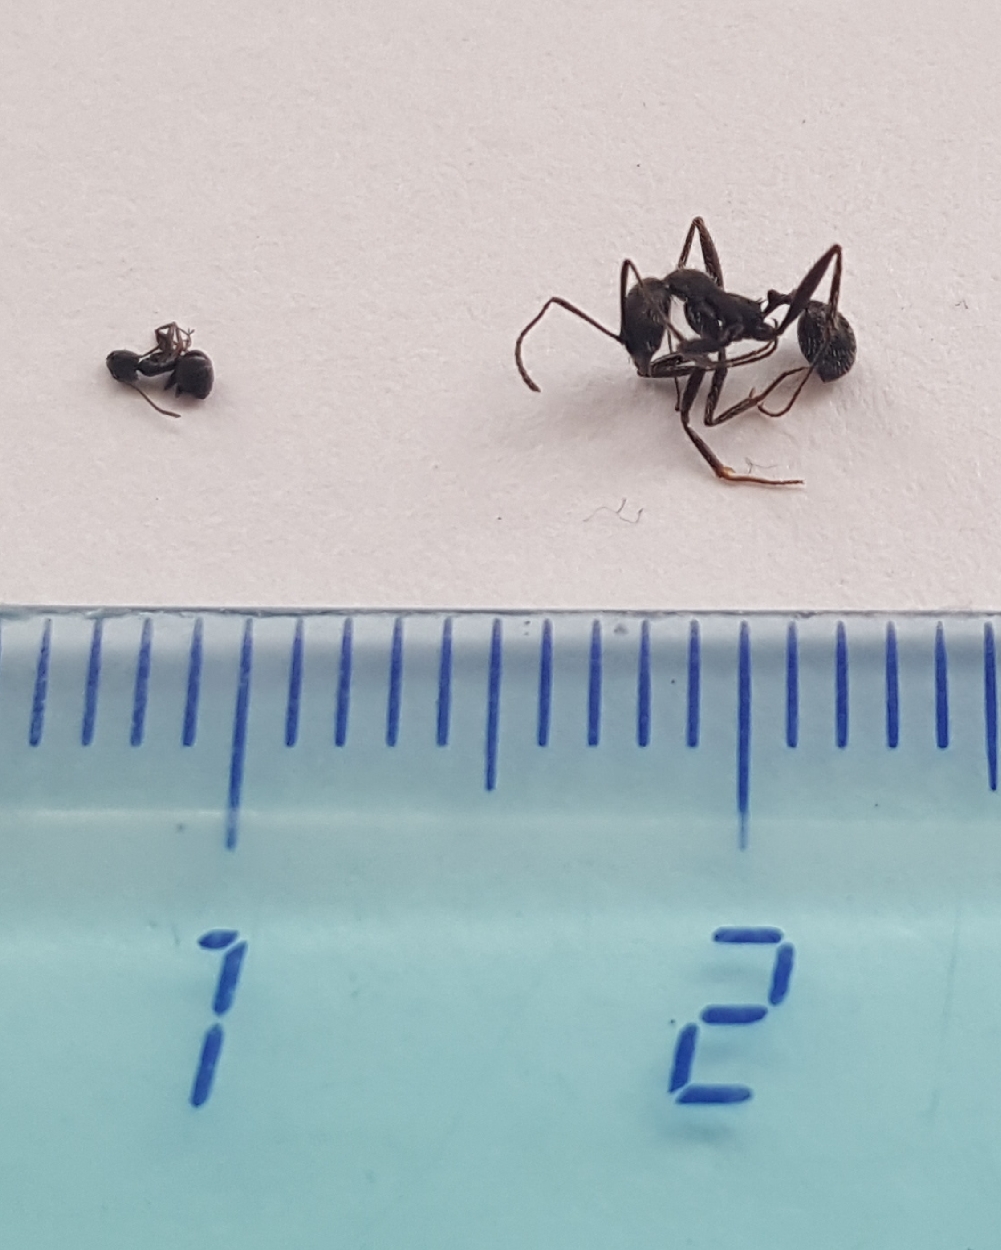 Identificar 2 hormigas